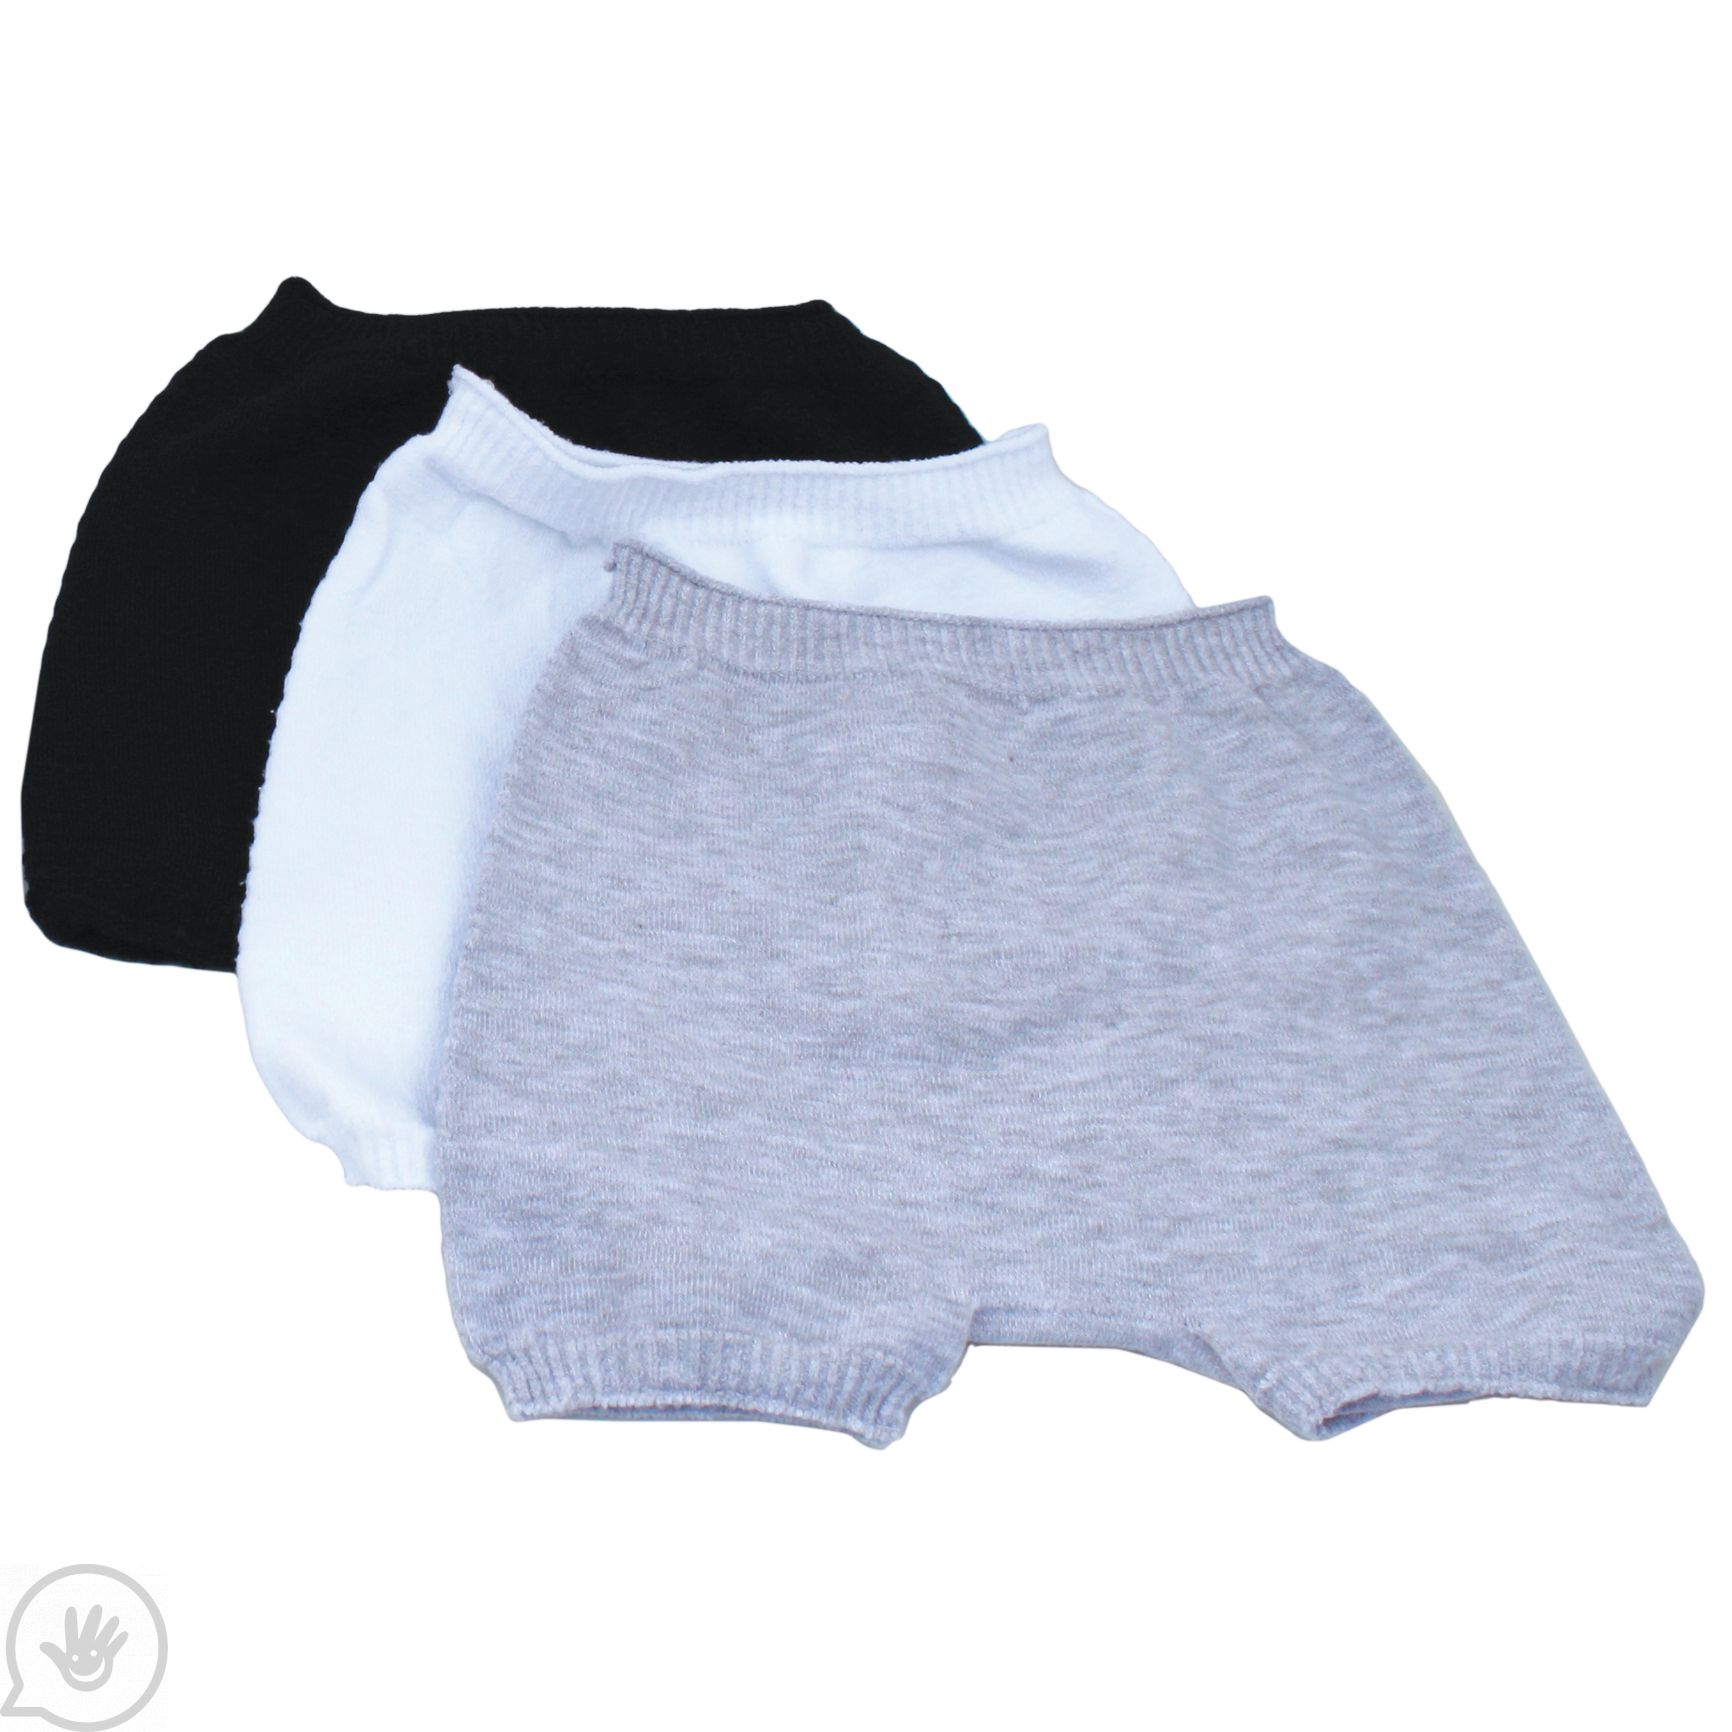 Antebies Boys Boxer Briefs White Organic Cotton Tagless Super Soft Underwear 2Pk 